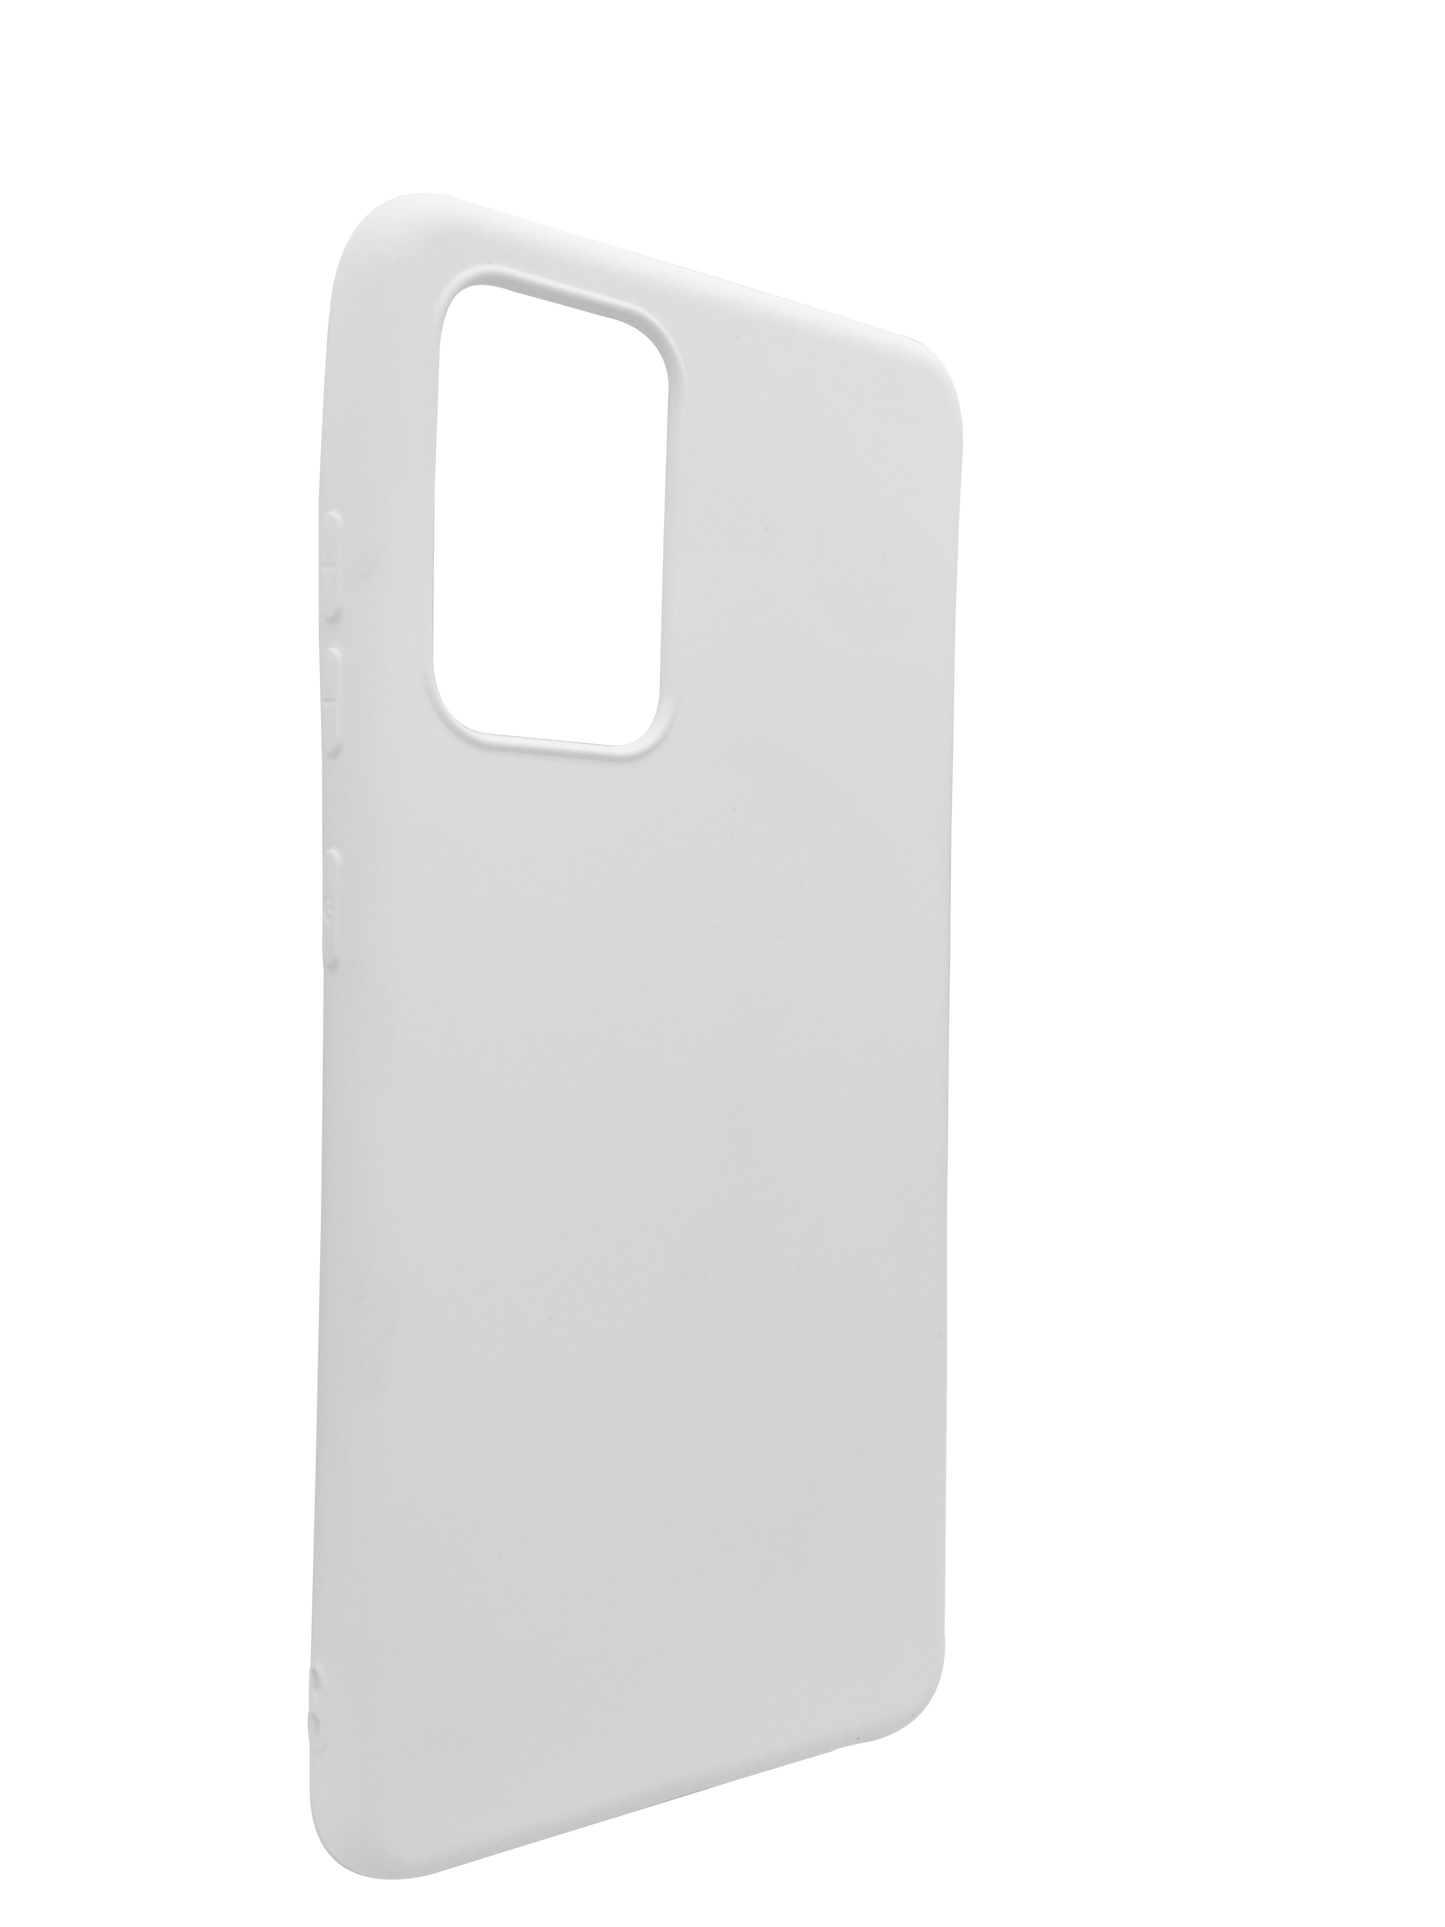 Silicone case Samsung A52 WHITE